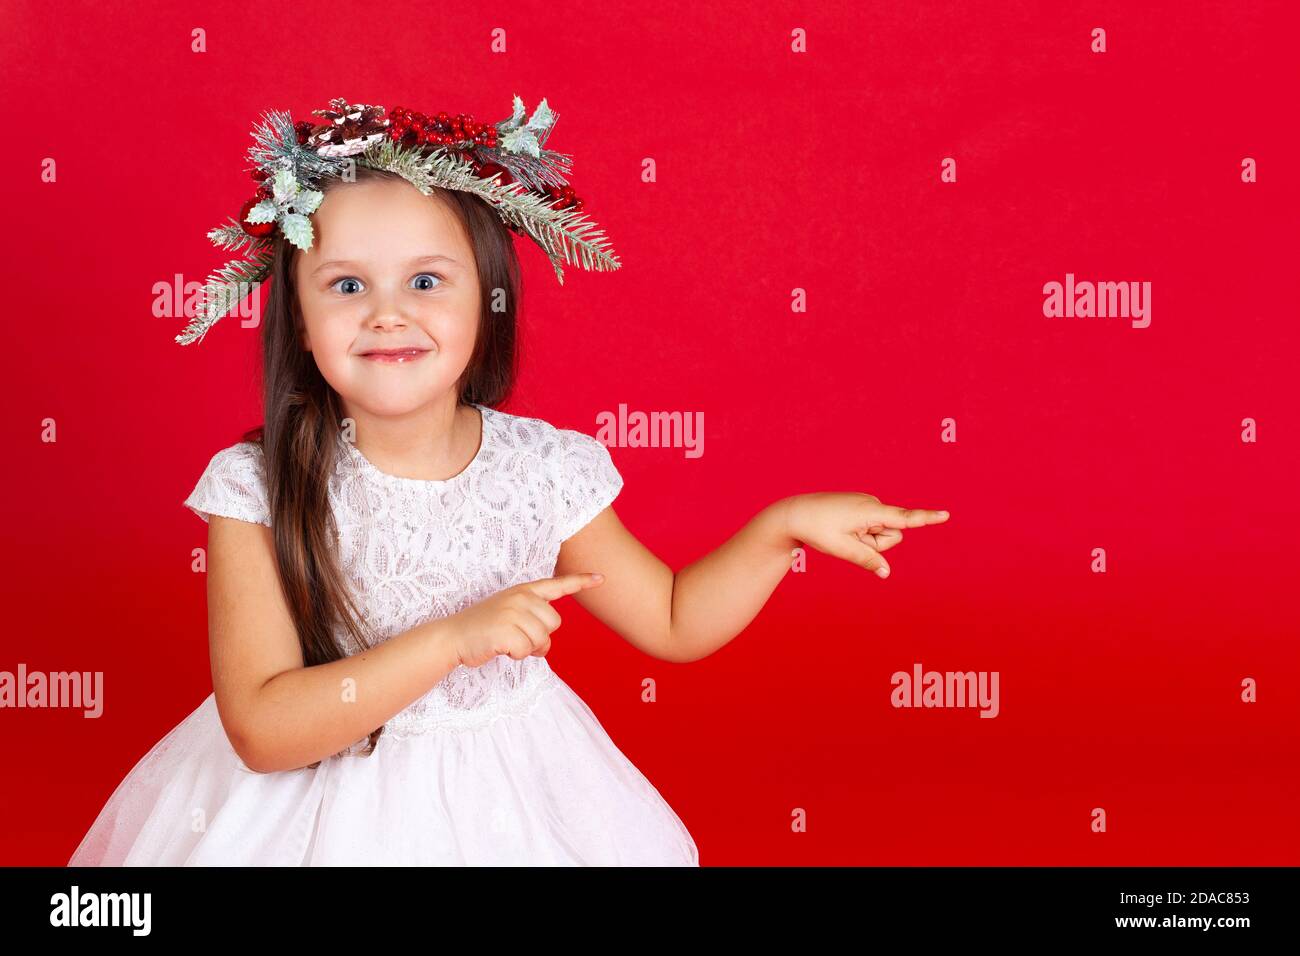 retrato simulado de una chica sorprendida en un vestido de vacaciones, apuntando con sus dedos índice, sobre un fondo rojo Foto de stock